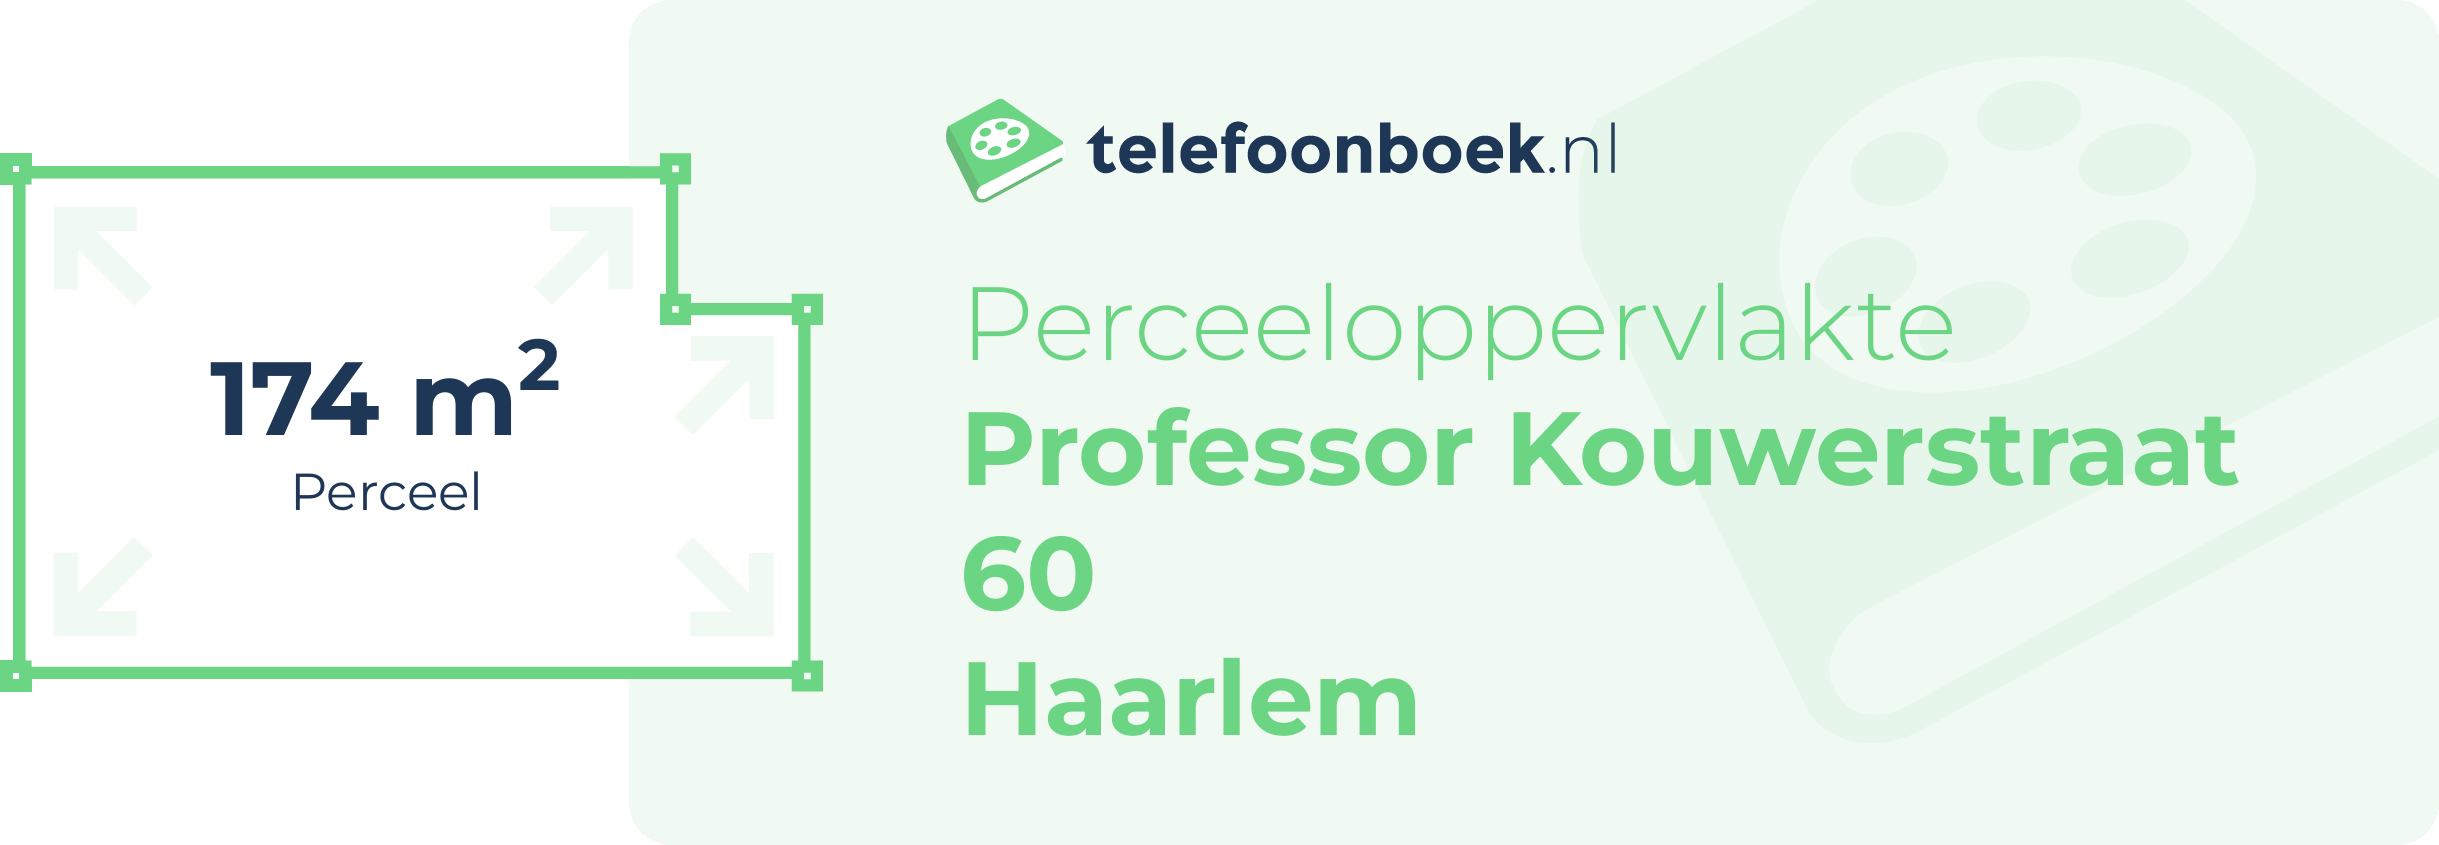 Perceeloppervlakte Professor Kouwerstraat 60 Haarlem